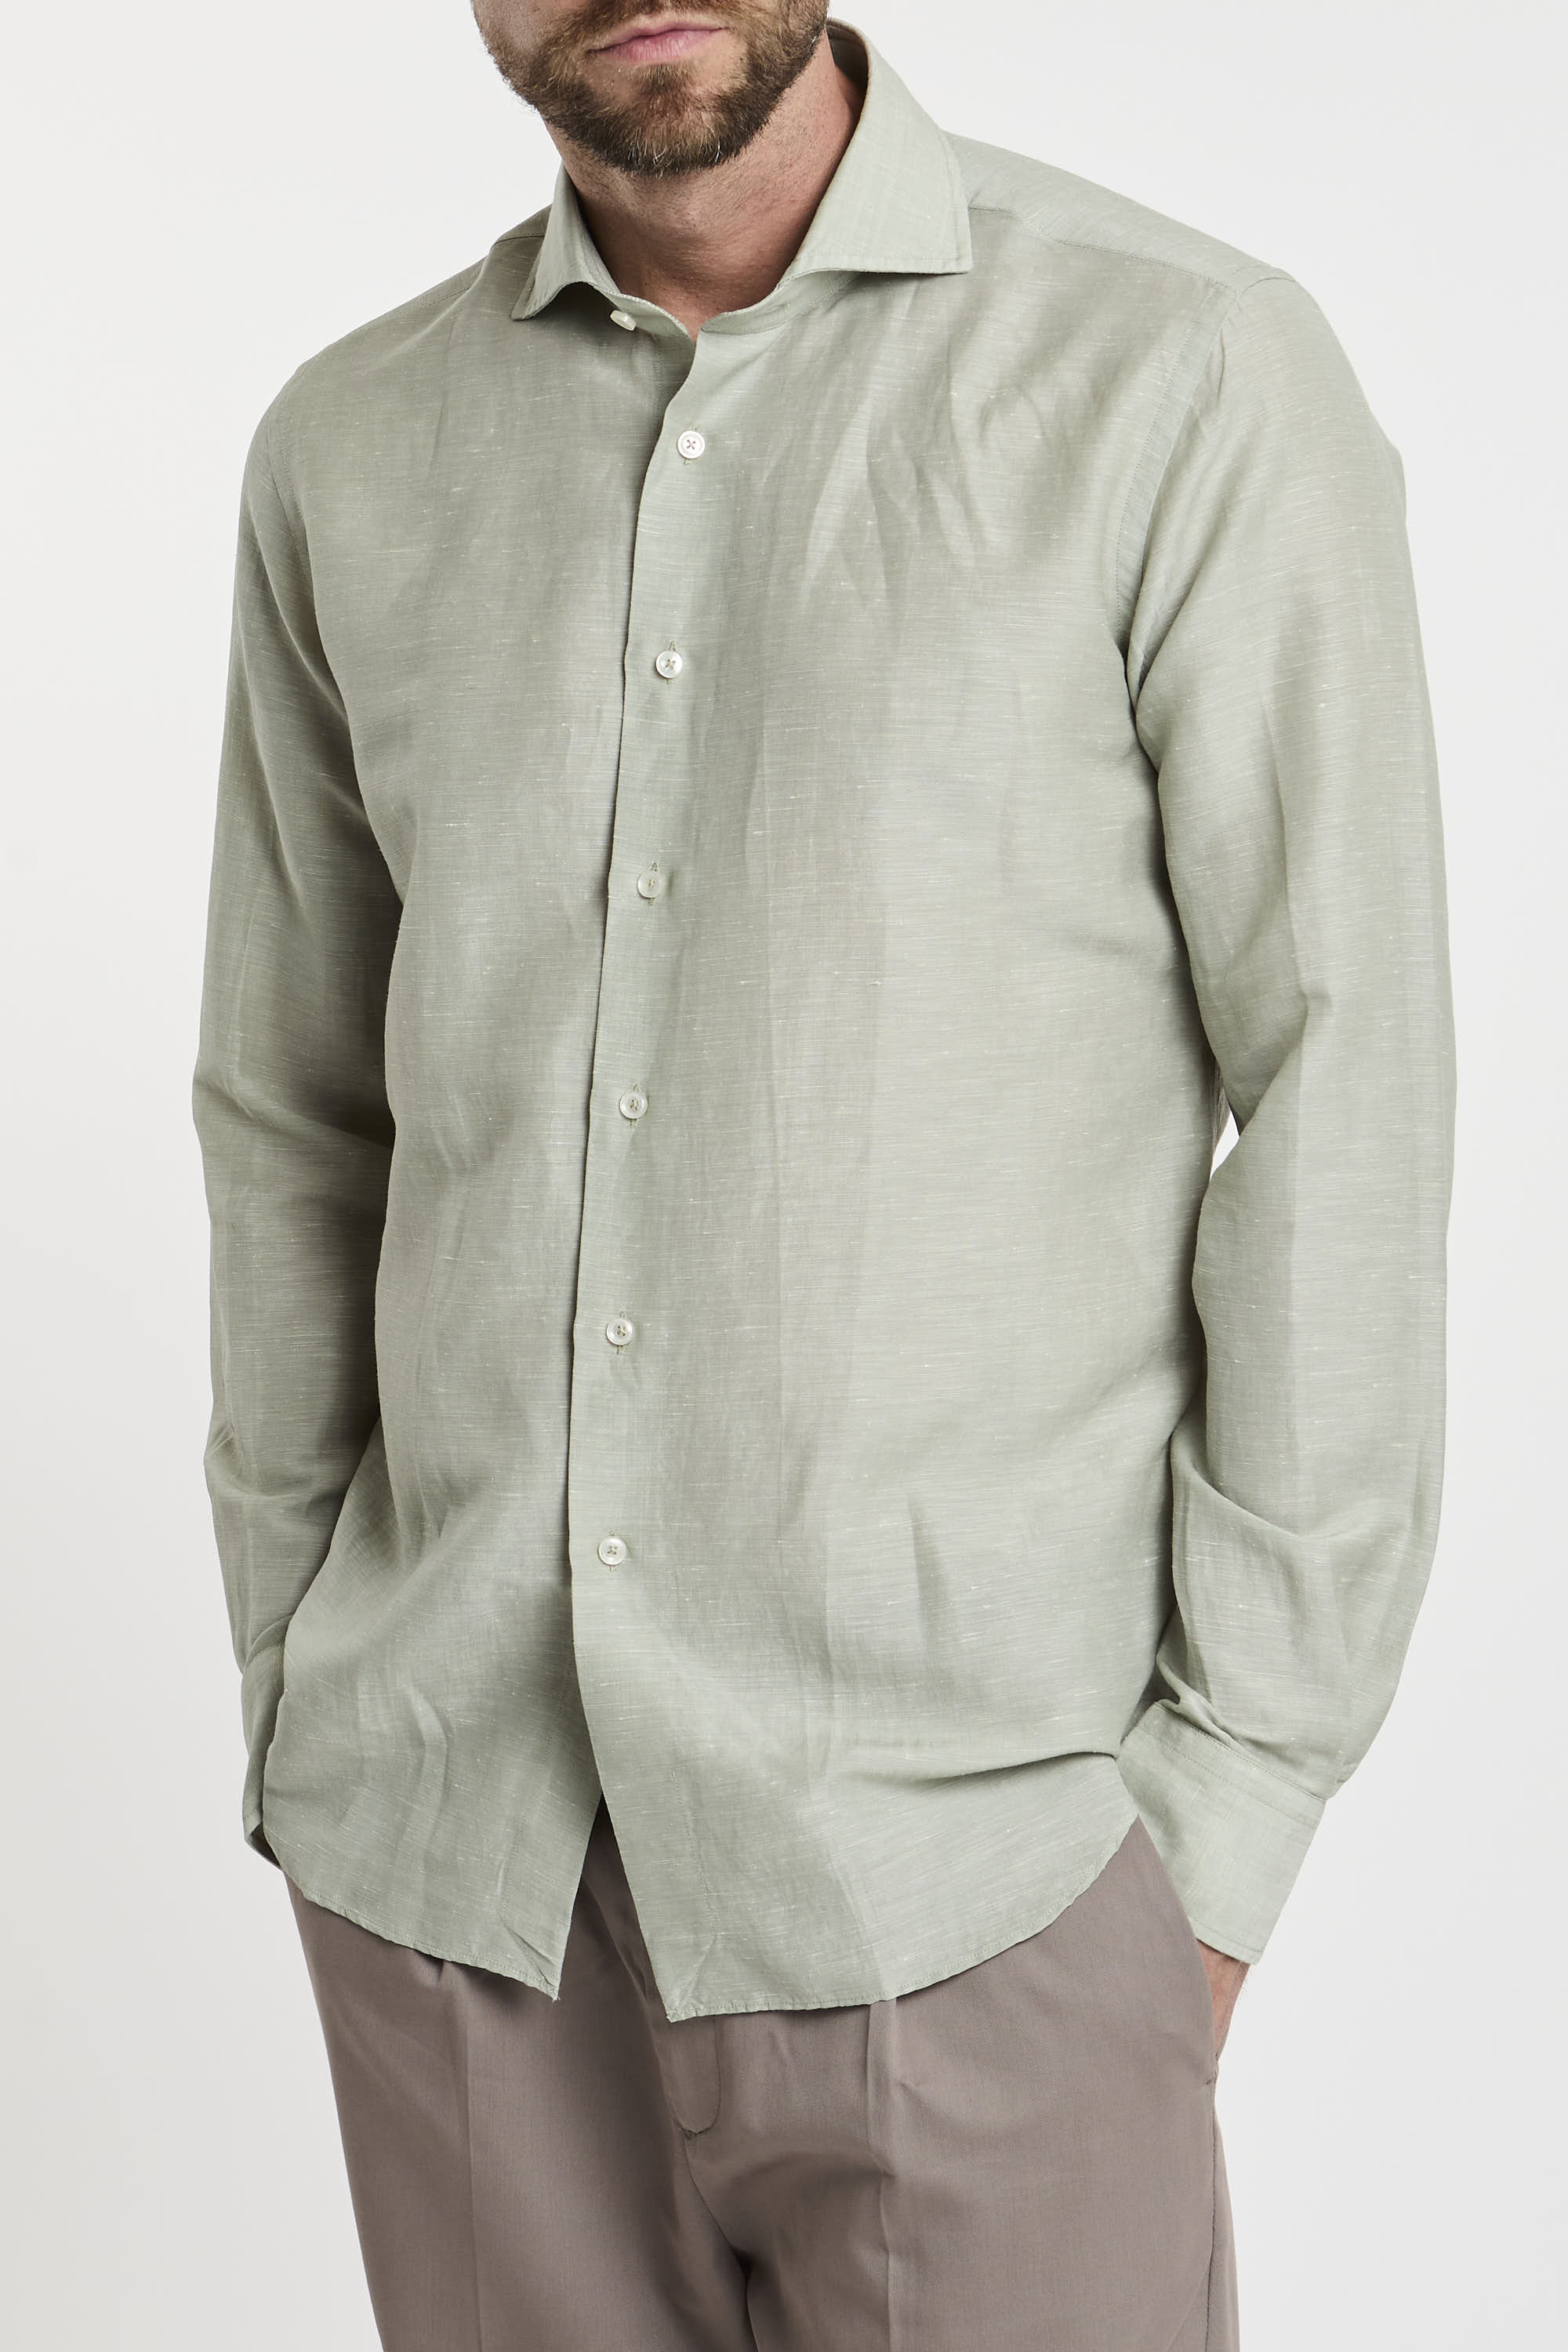 Xacus Wool and Linen Blend Green Shirt-7